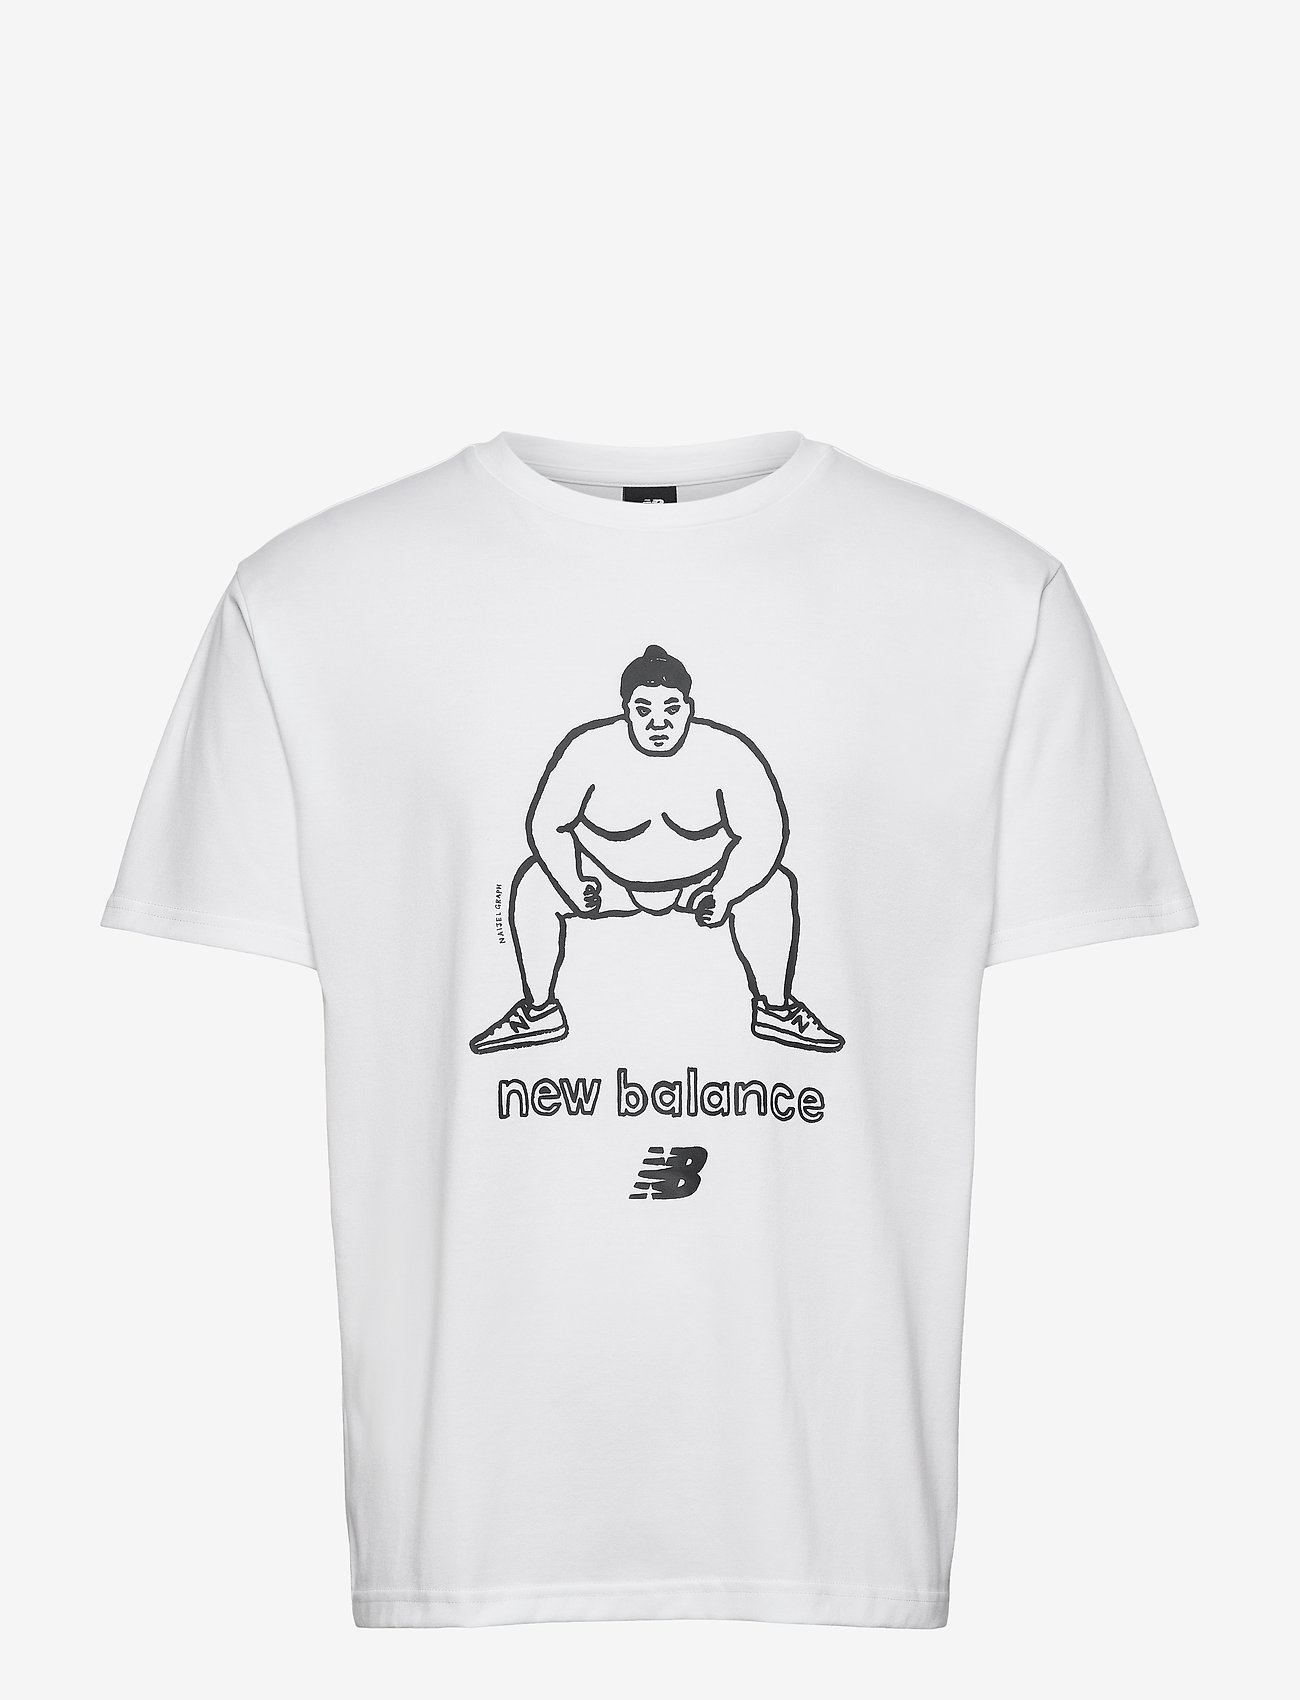 balance t shirt